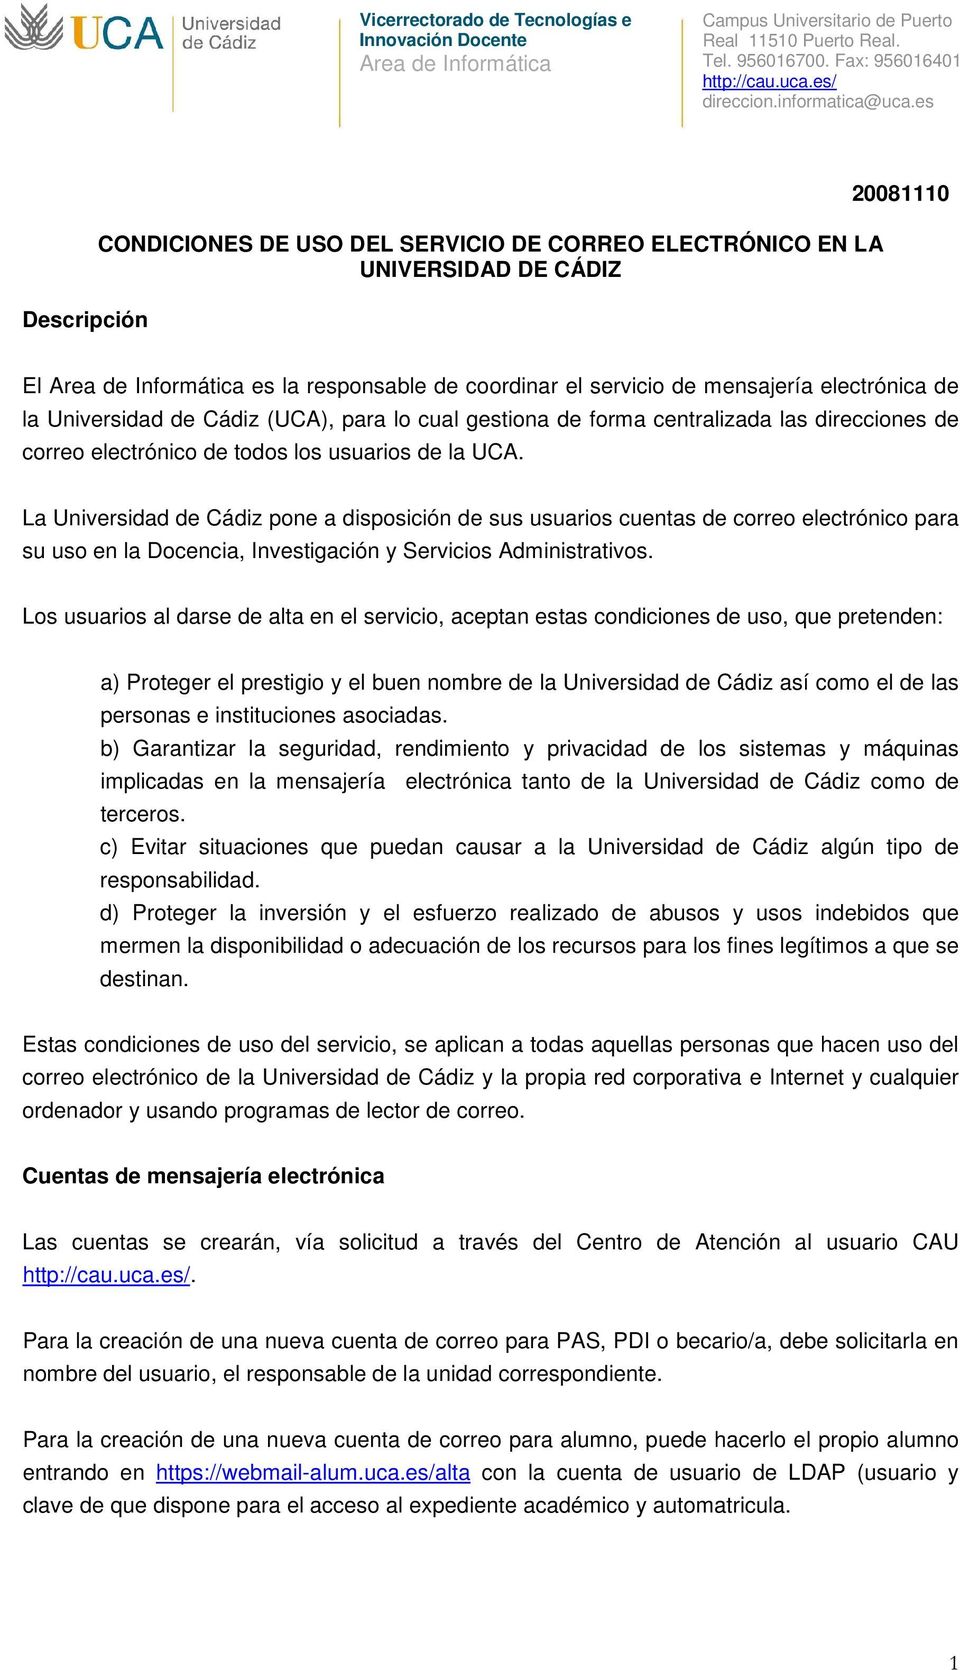 La Universidad de Cádiz pone a disposición de sus usuarios cuentas de correo electrónico para su uso en la Docencia, Investigación y Servicios Administrativos.